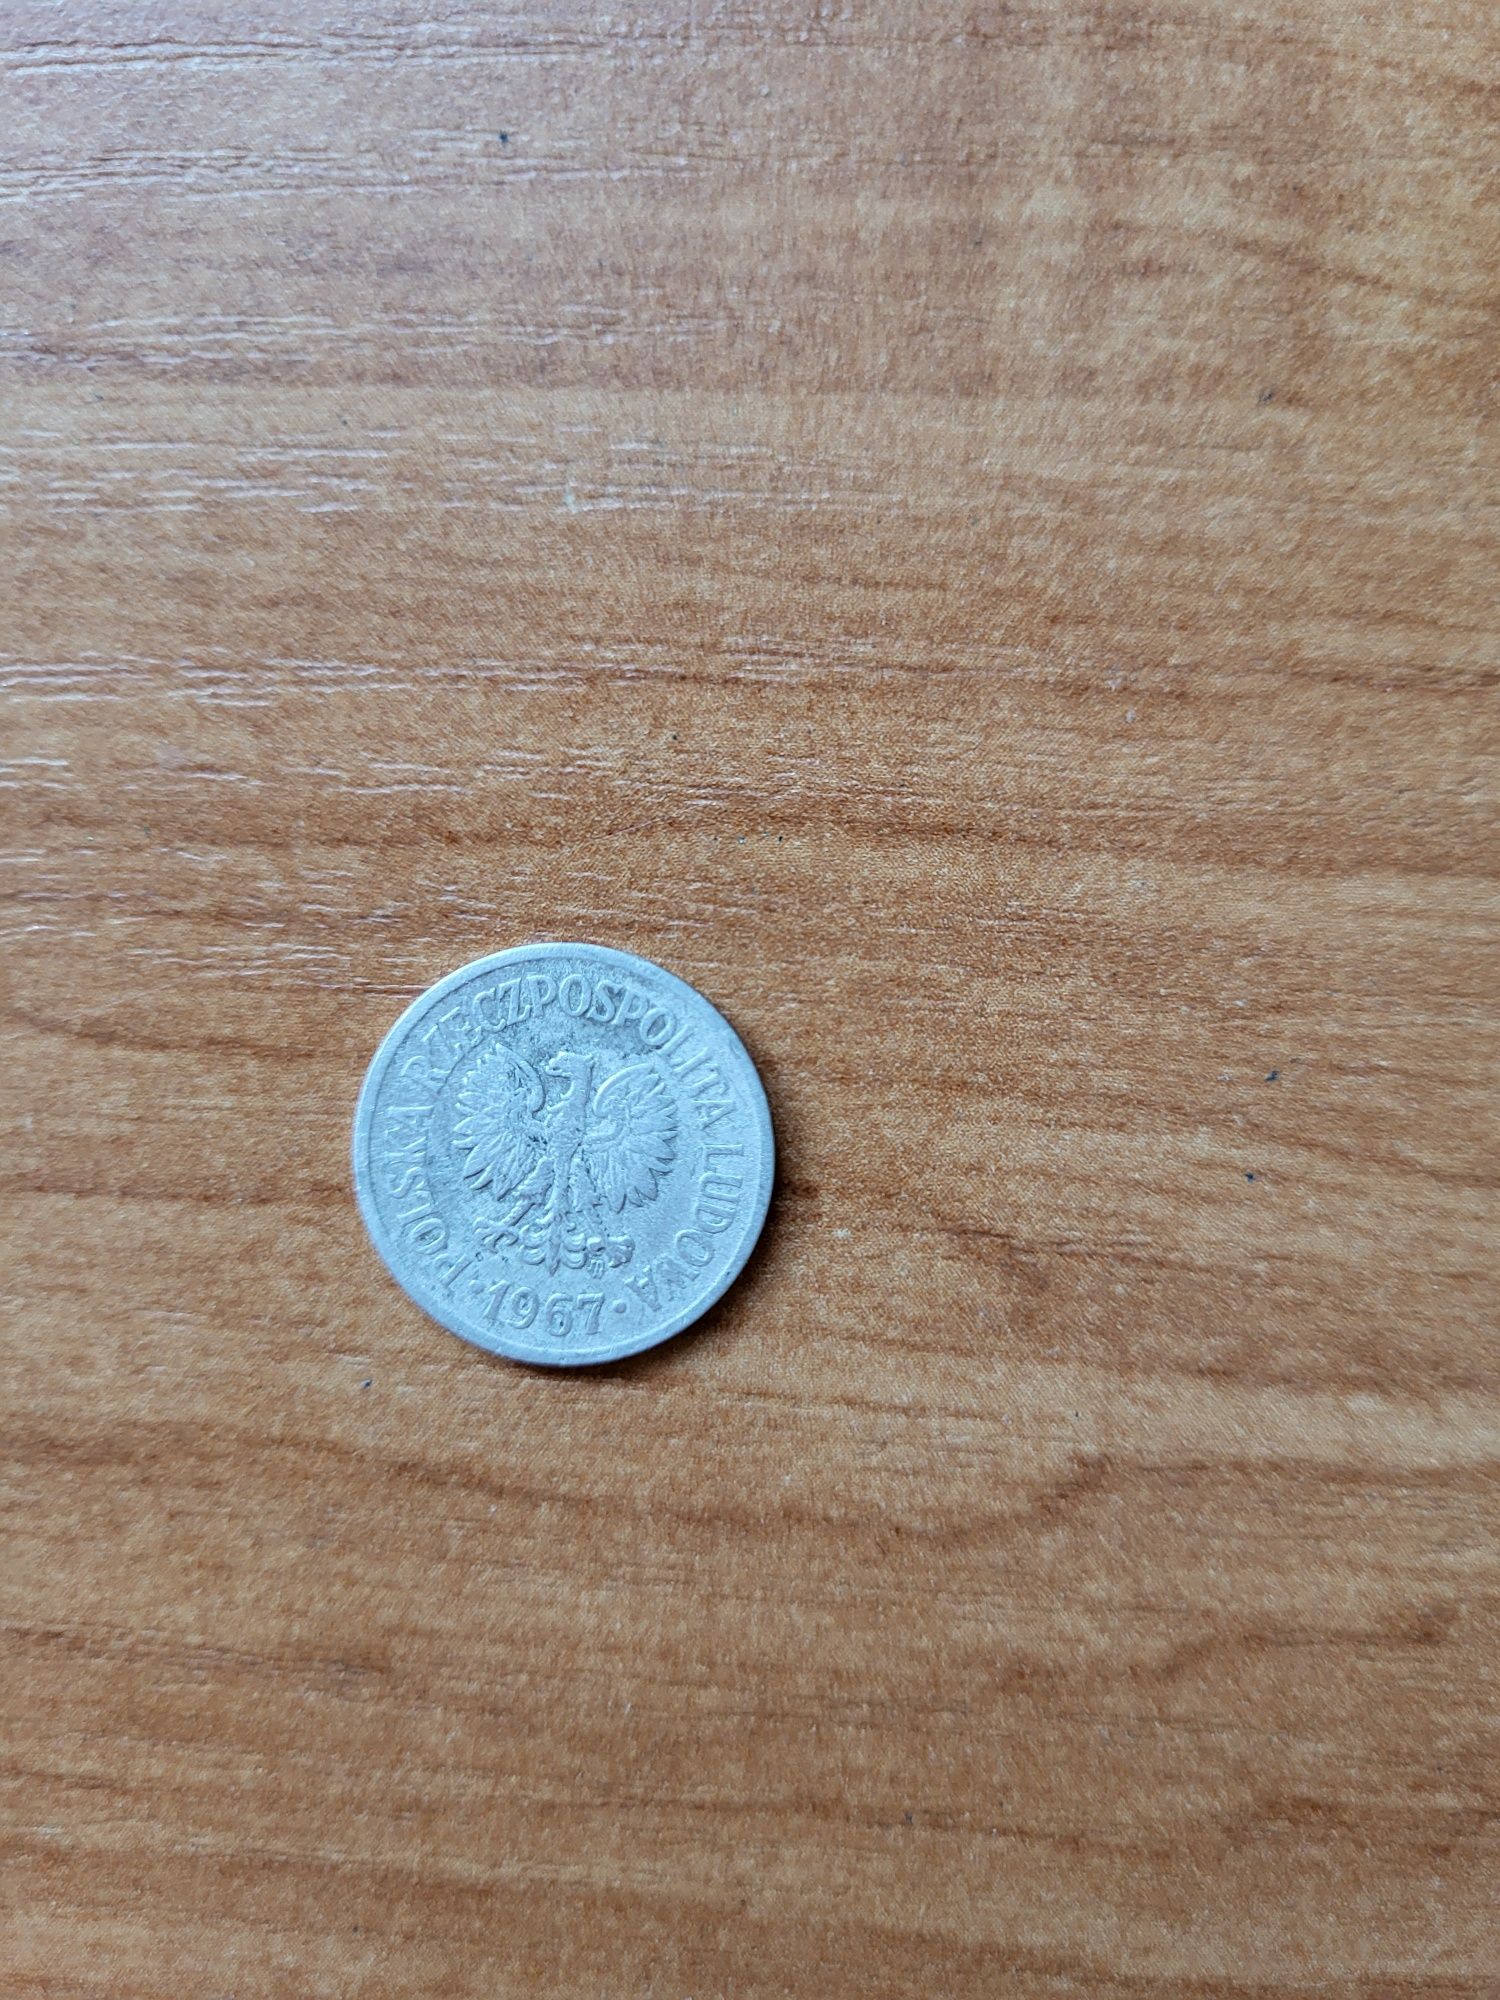 Moneta 10 groszy z 1967 roku